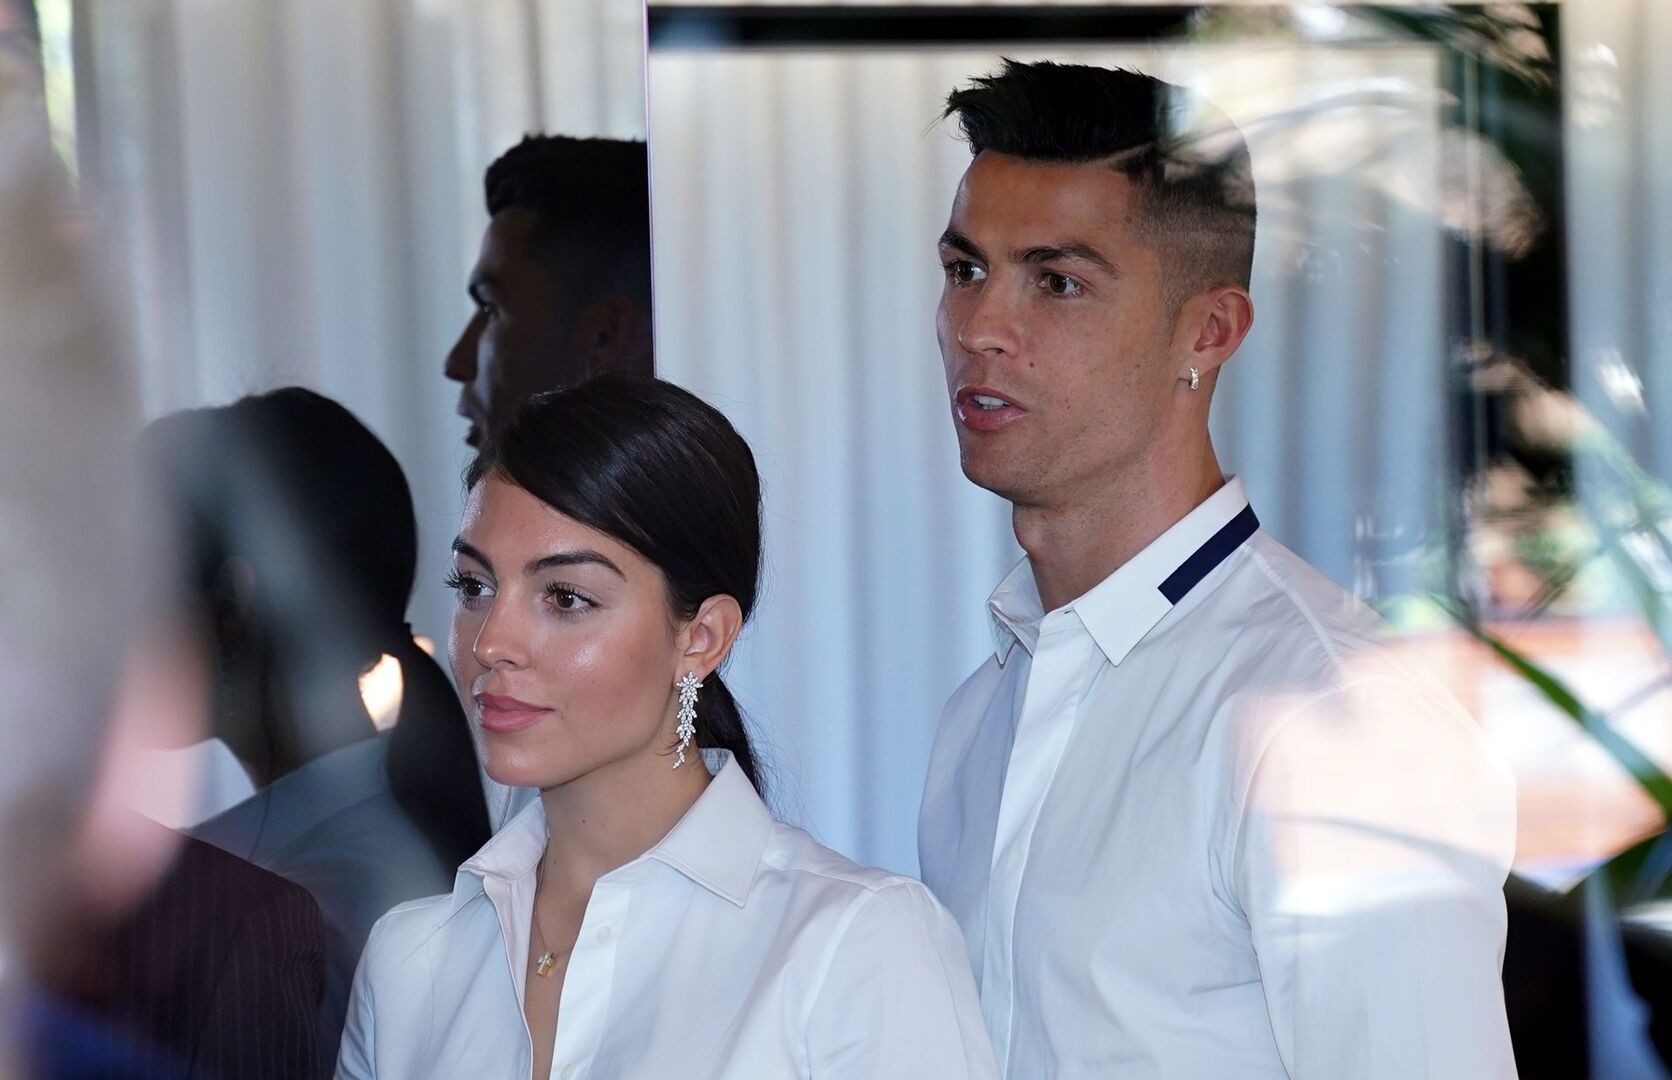 El principio Nombrar nadar Cristiano Ronaldo: "Madrid me ha dado mucho" - Carlos Pérez Gimeno - Chic